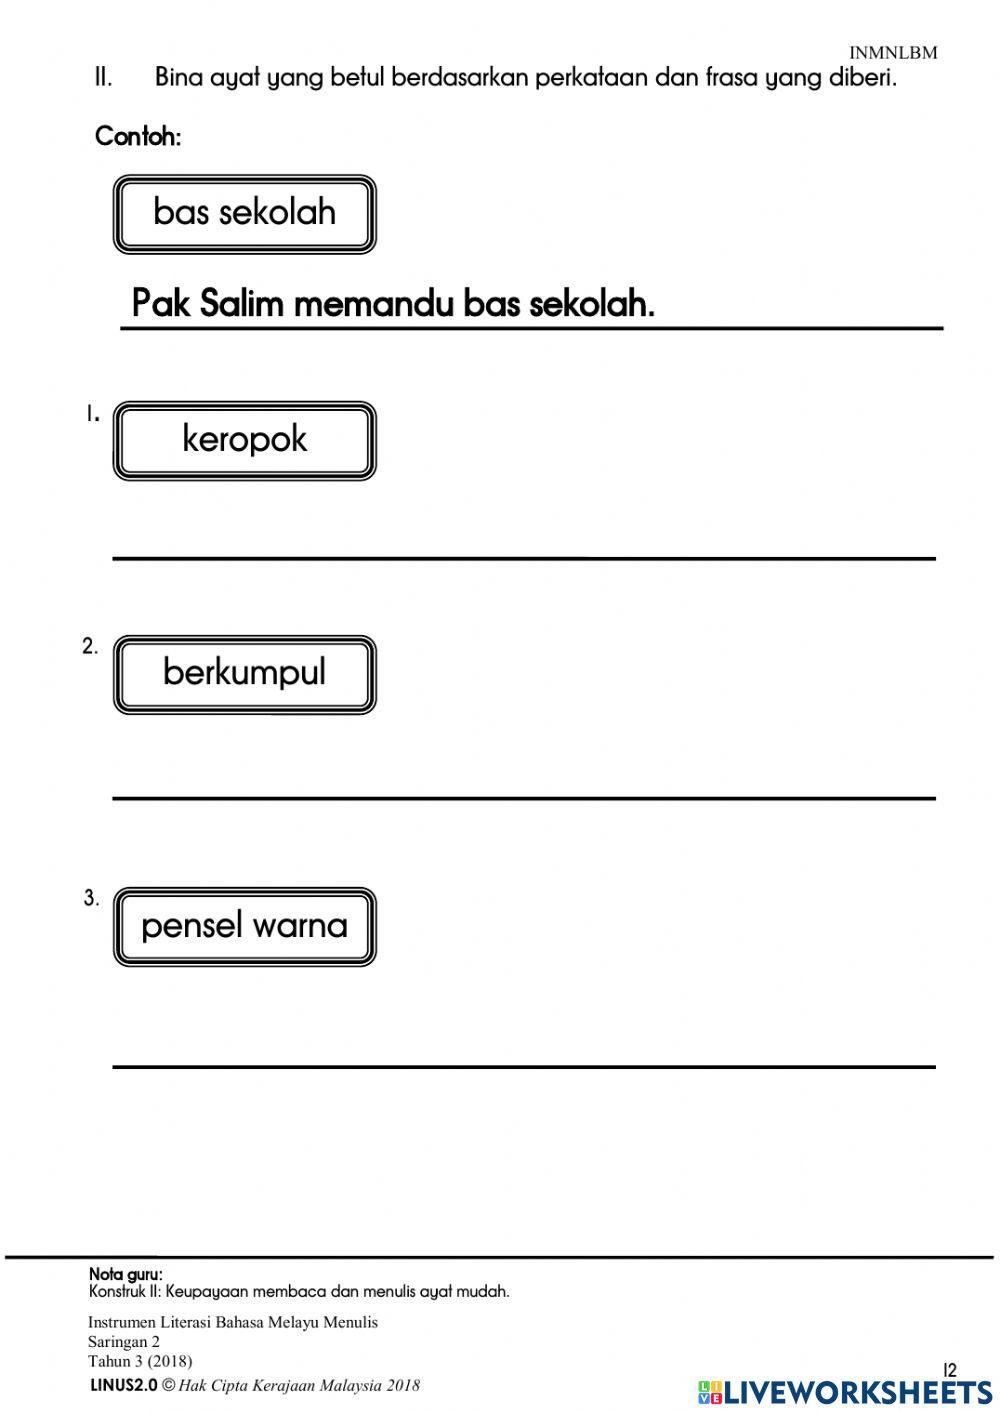 Instrumen Saringan 2 -Literasi Bahasa Melayu-Menulis-Tahun 3